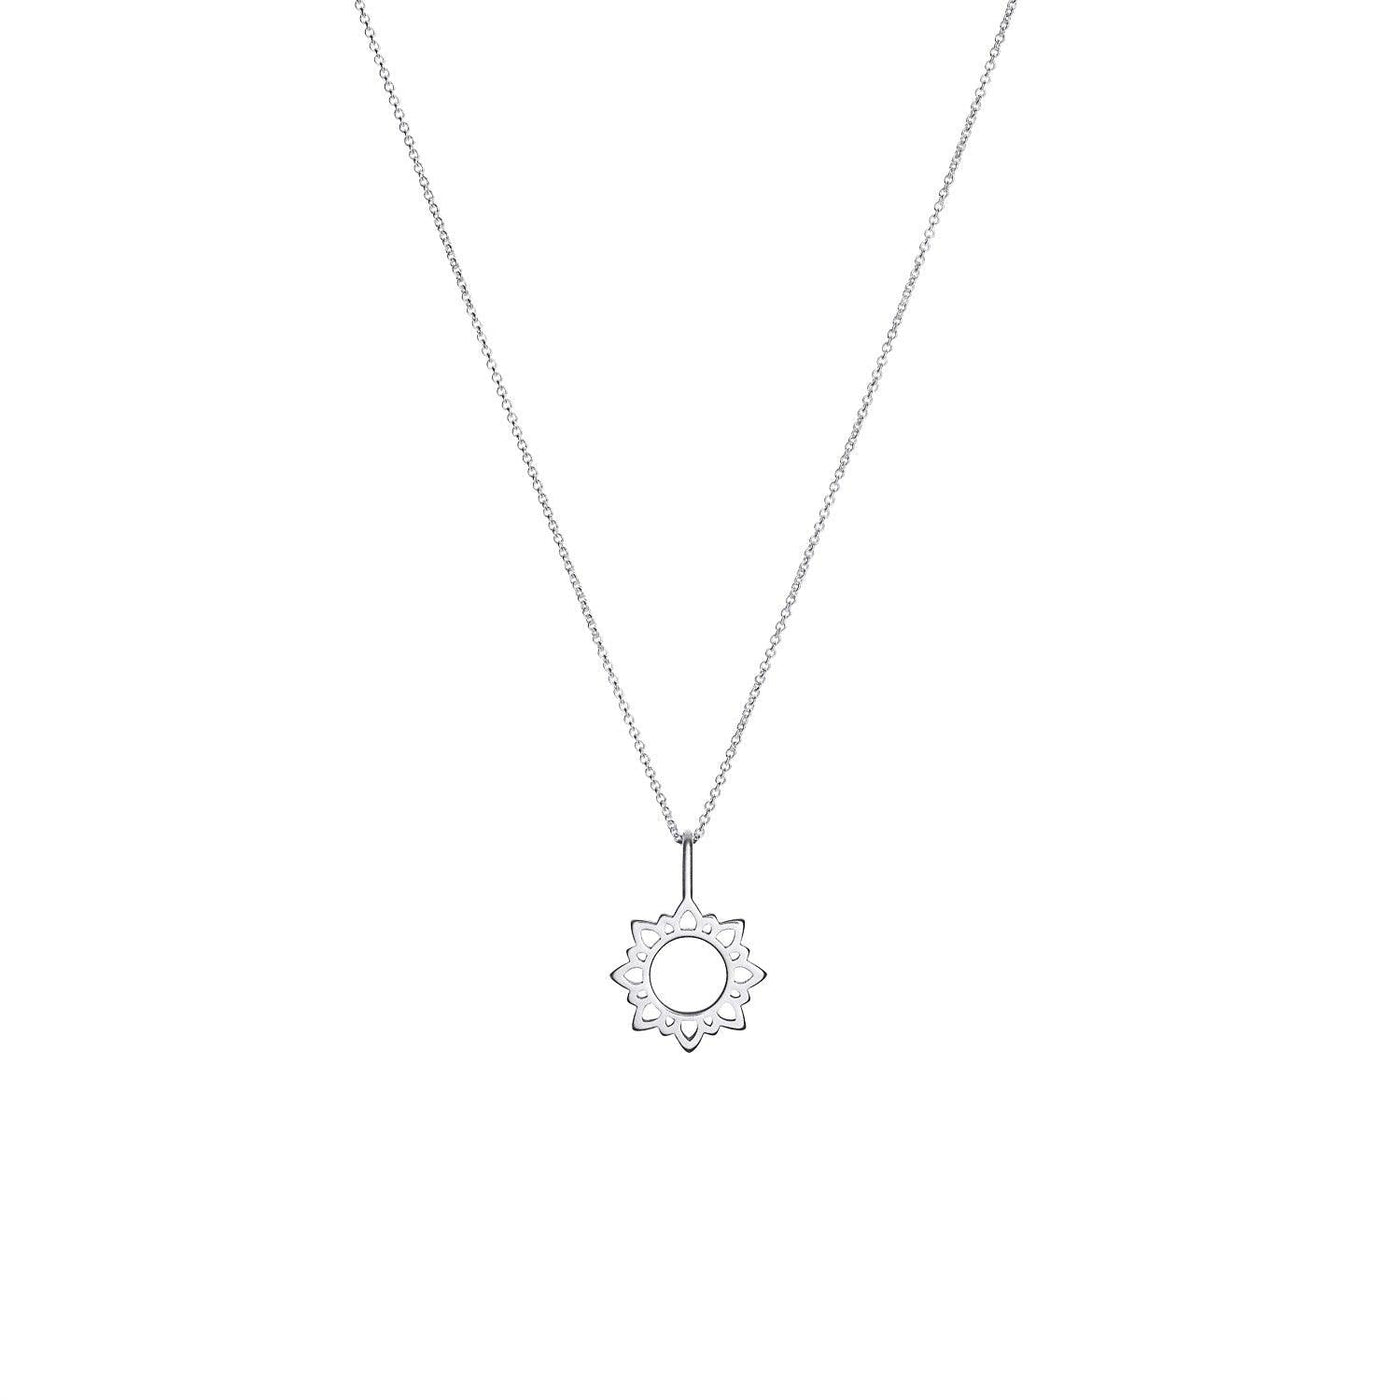 KLEINE SONNE ◦ 925' Silber - Halskette - iz-el